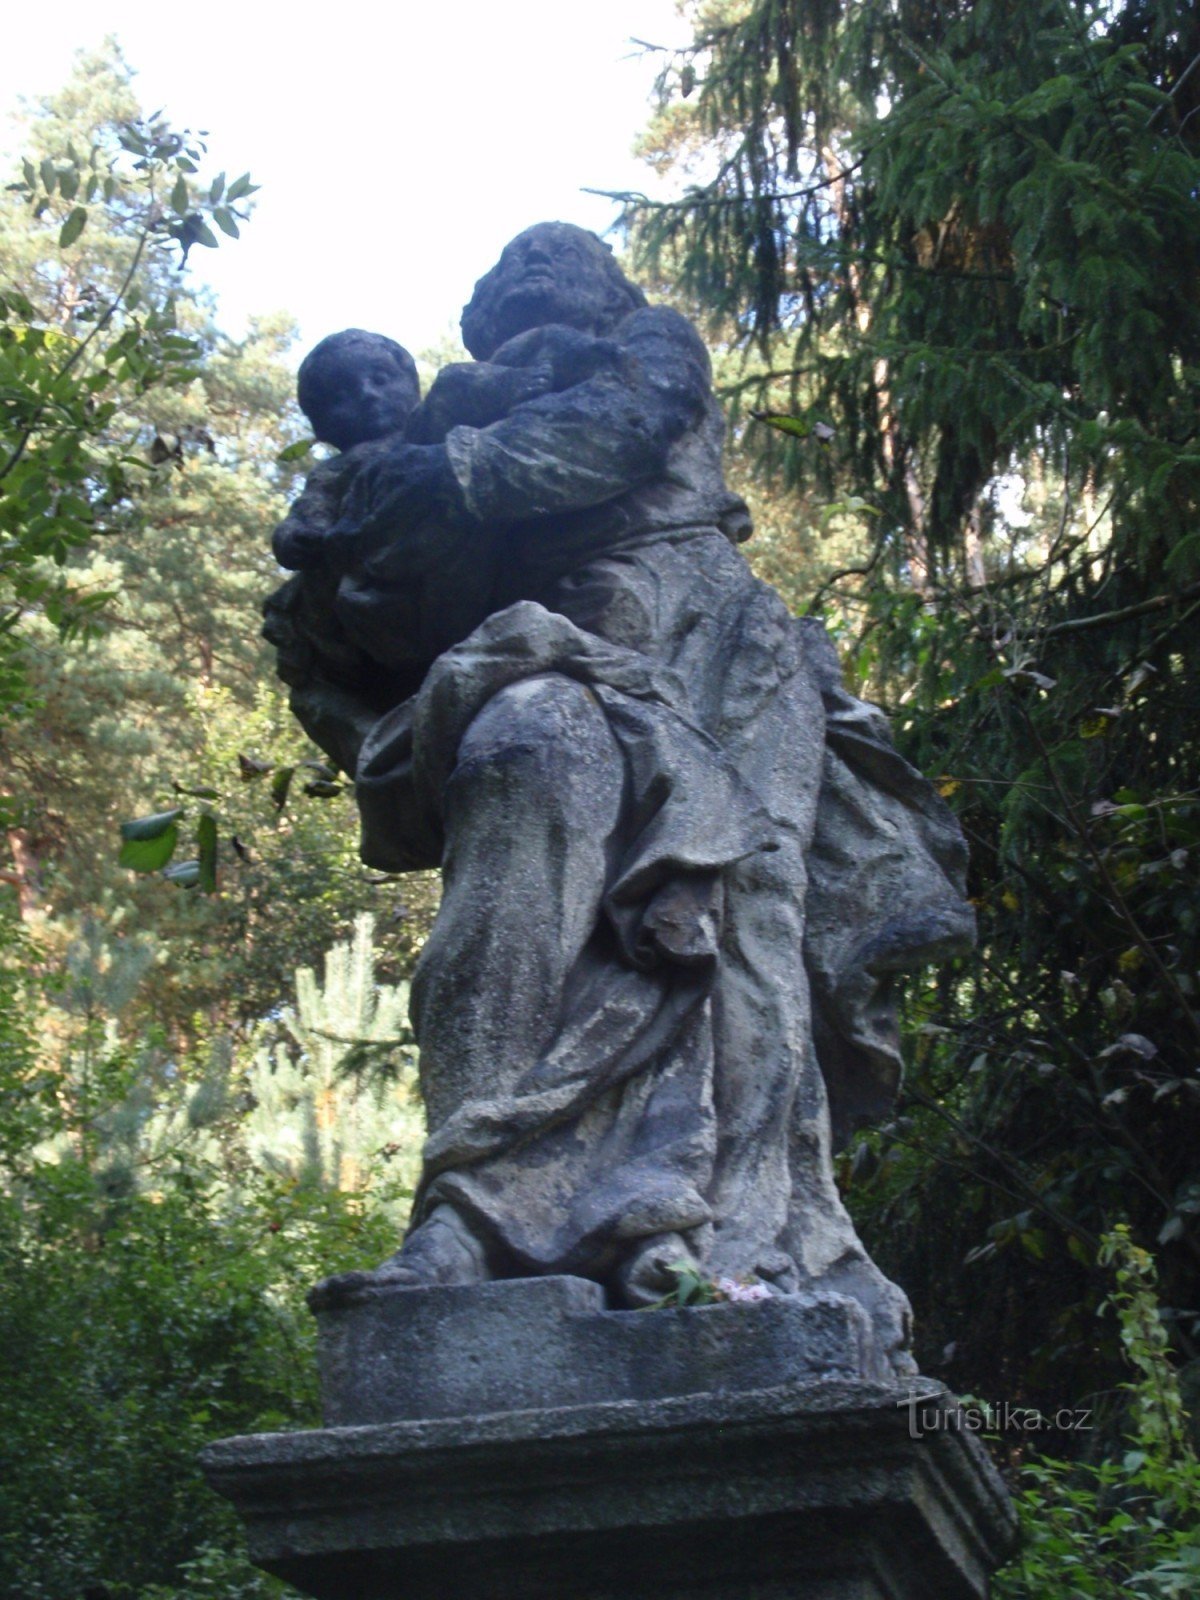 Статуя св. Иосиф с младенцем Иисусом возле Тасова